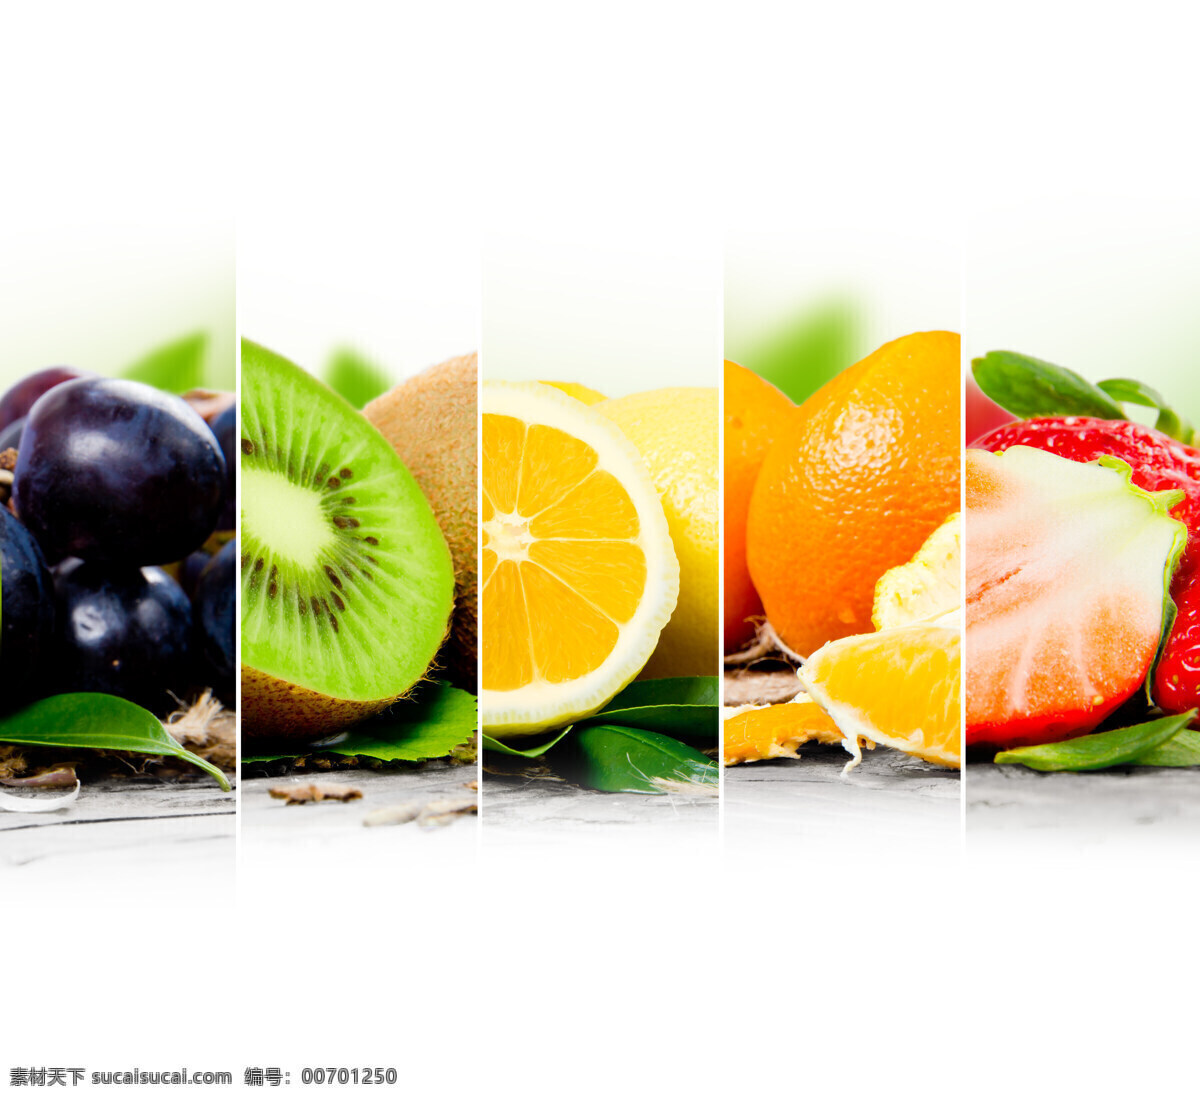 新鲜 水果 新鲜水果 葡萄 提子 猕猴桃 橙子 草莓 水果摄影 果实 水果蔬菜 水果图片 餐饮美食